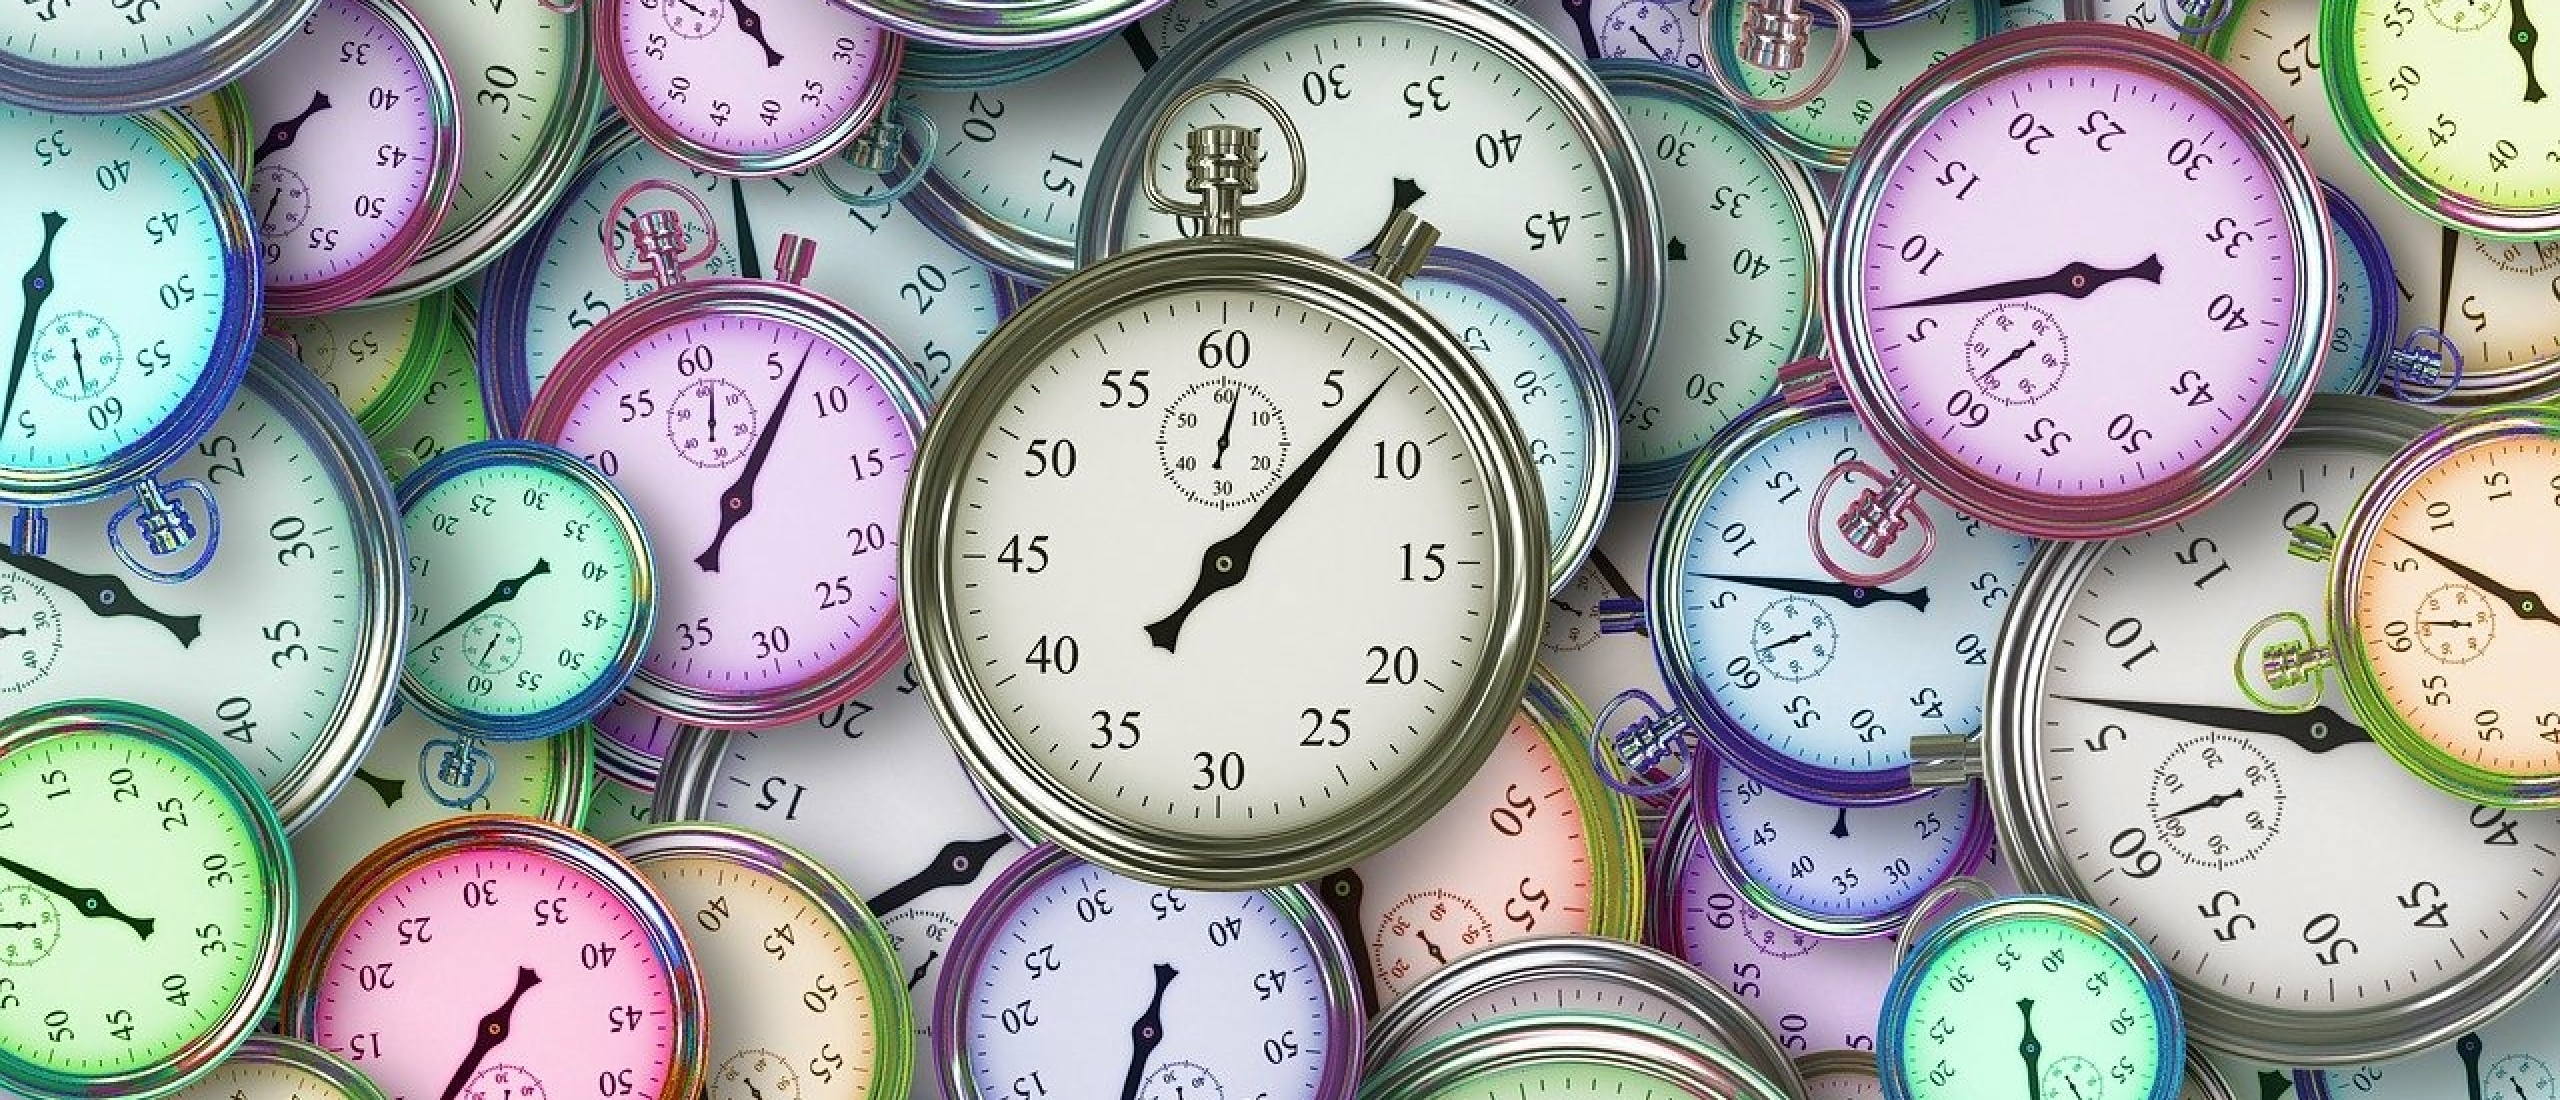 101 Grappige Redenen Waarom Time Management Op Het Werk Niet Werkt